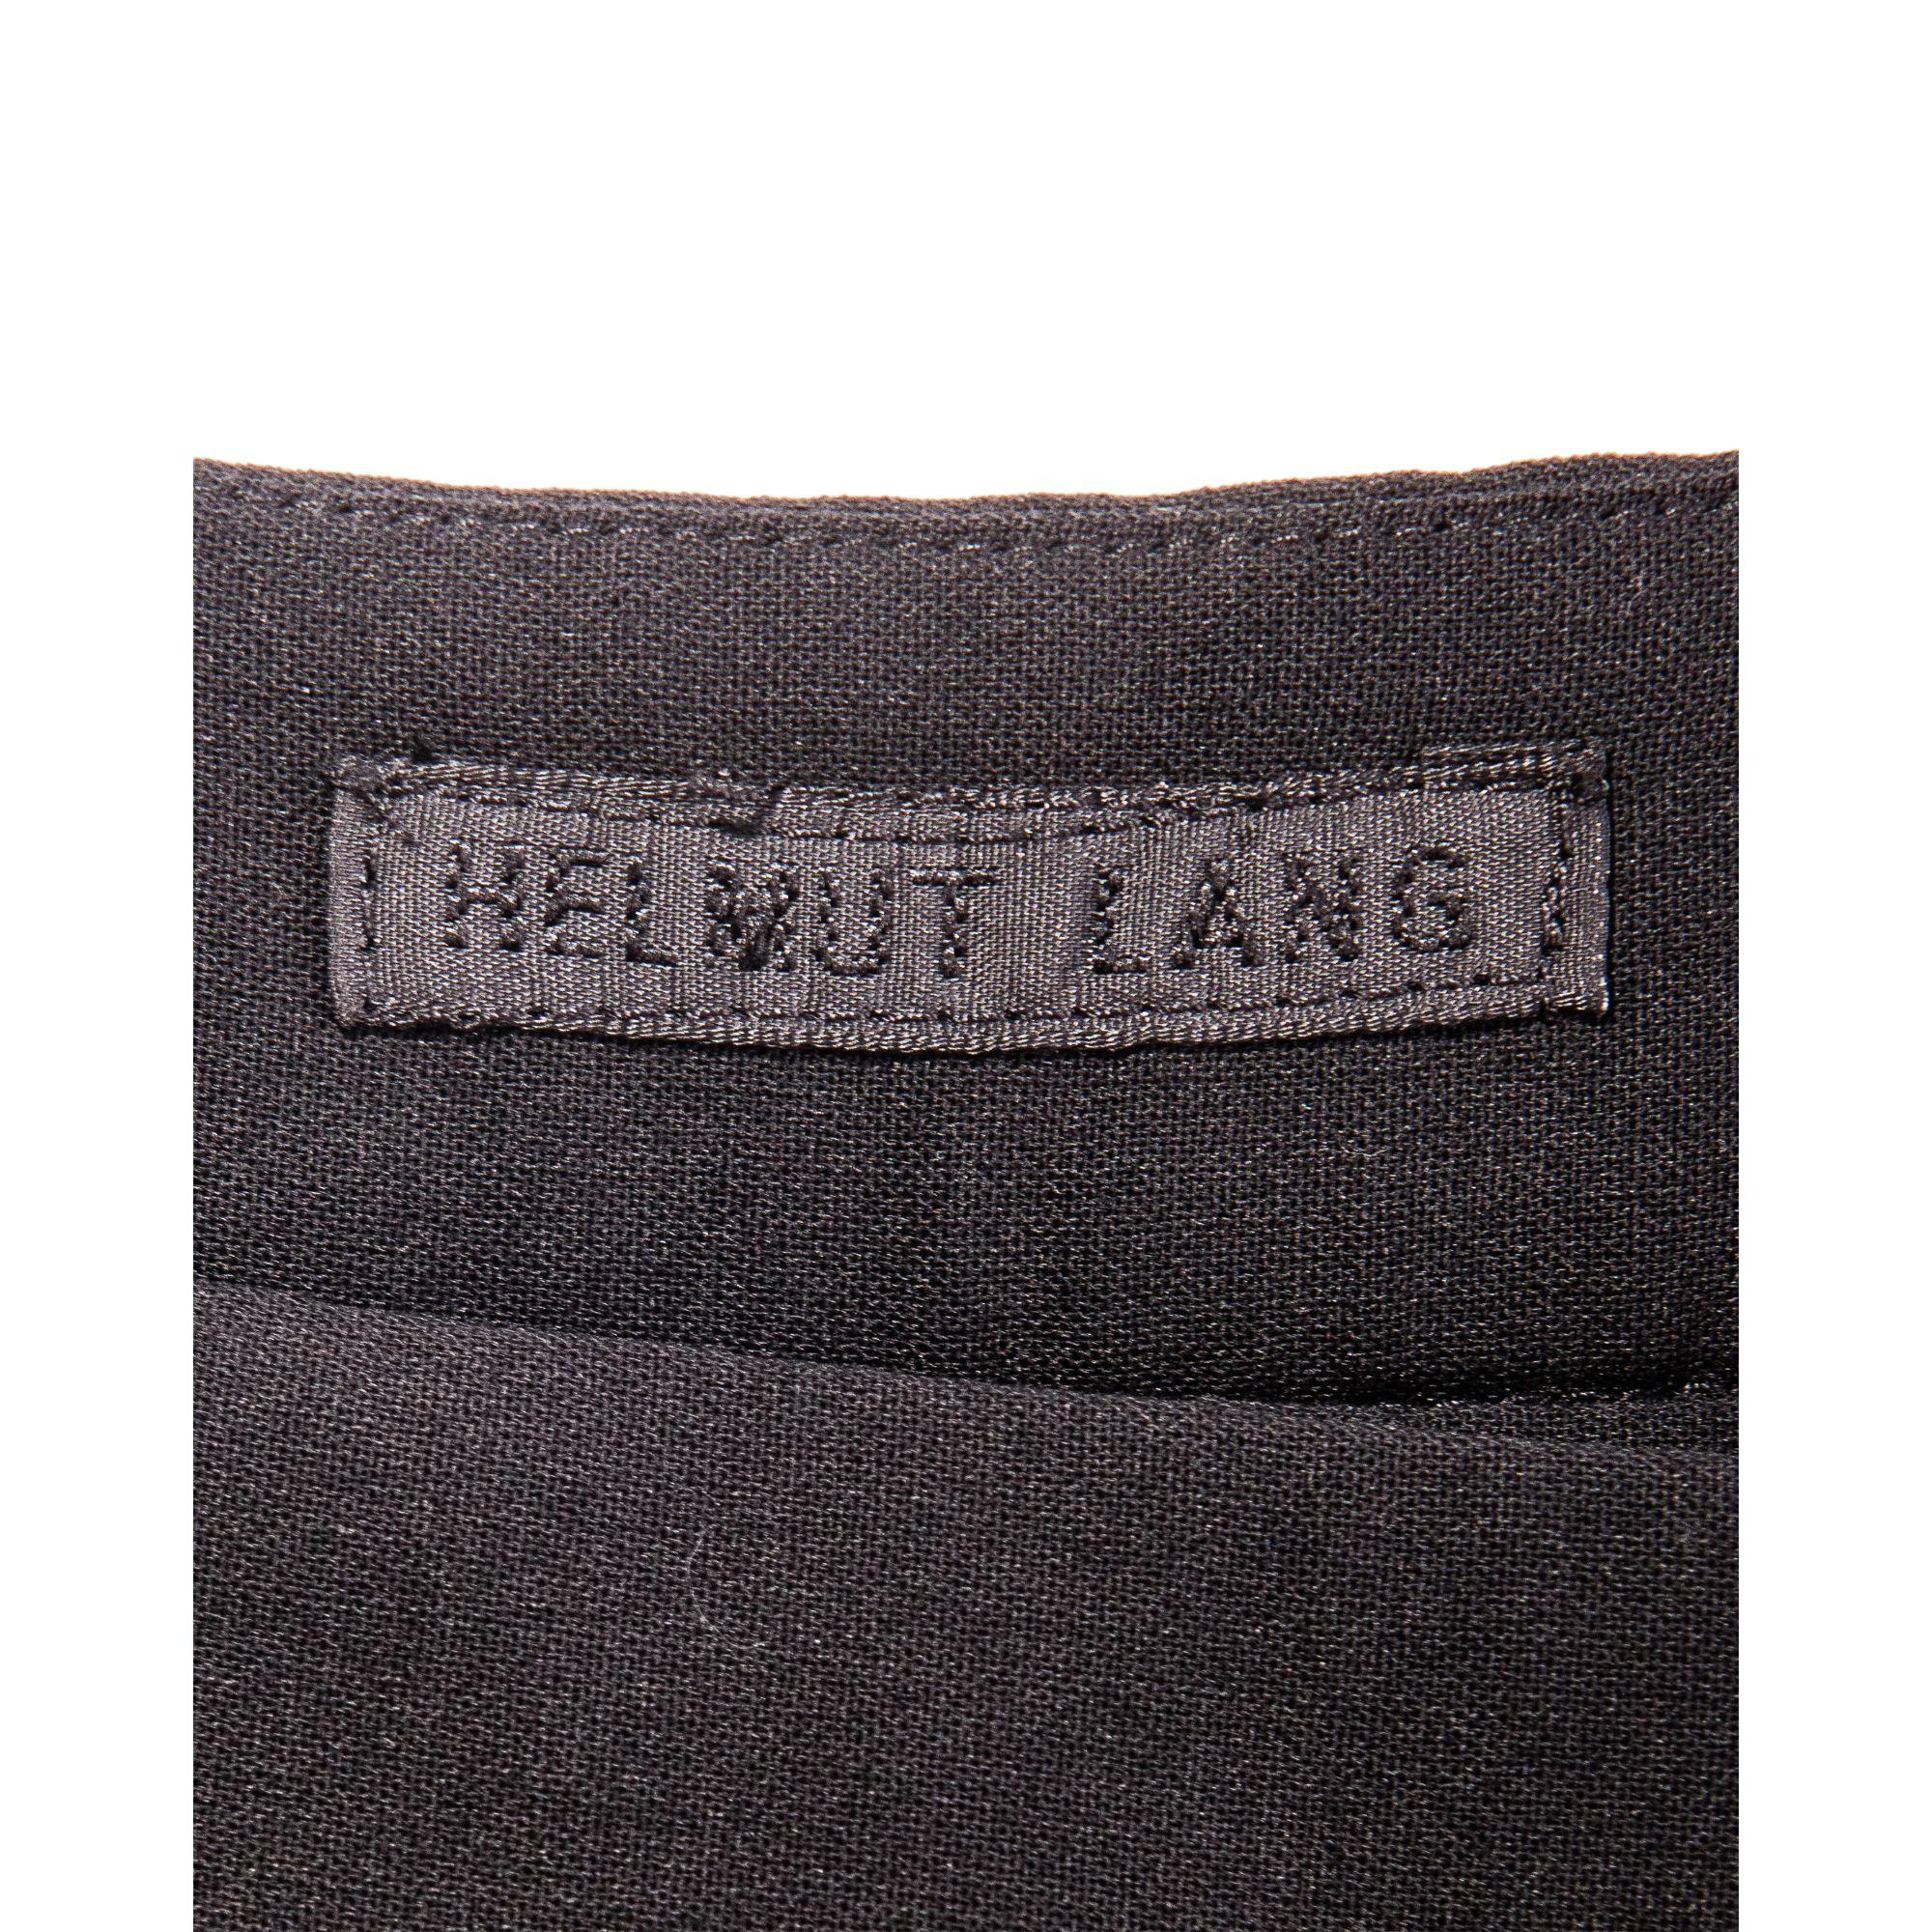 S/S 2001 Helmut Lang Black Side Cutout Pants 3